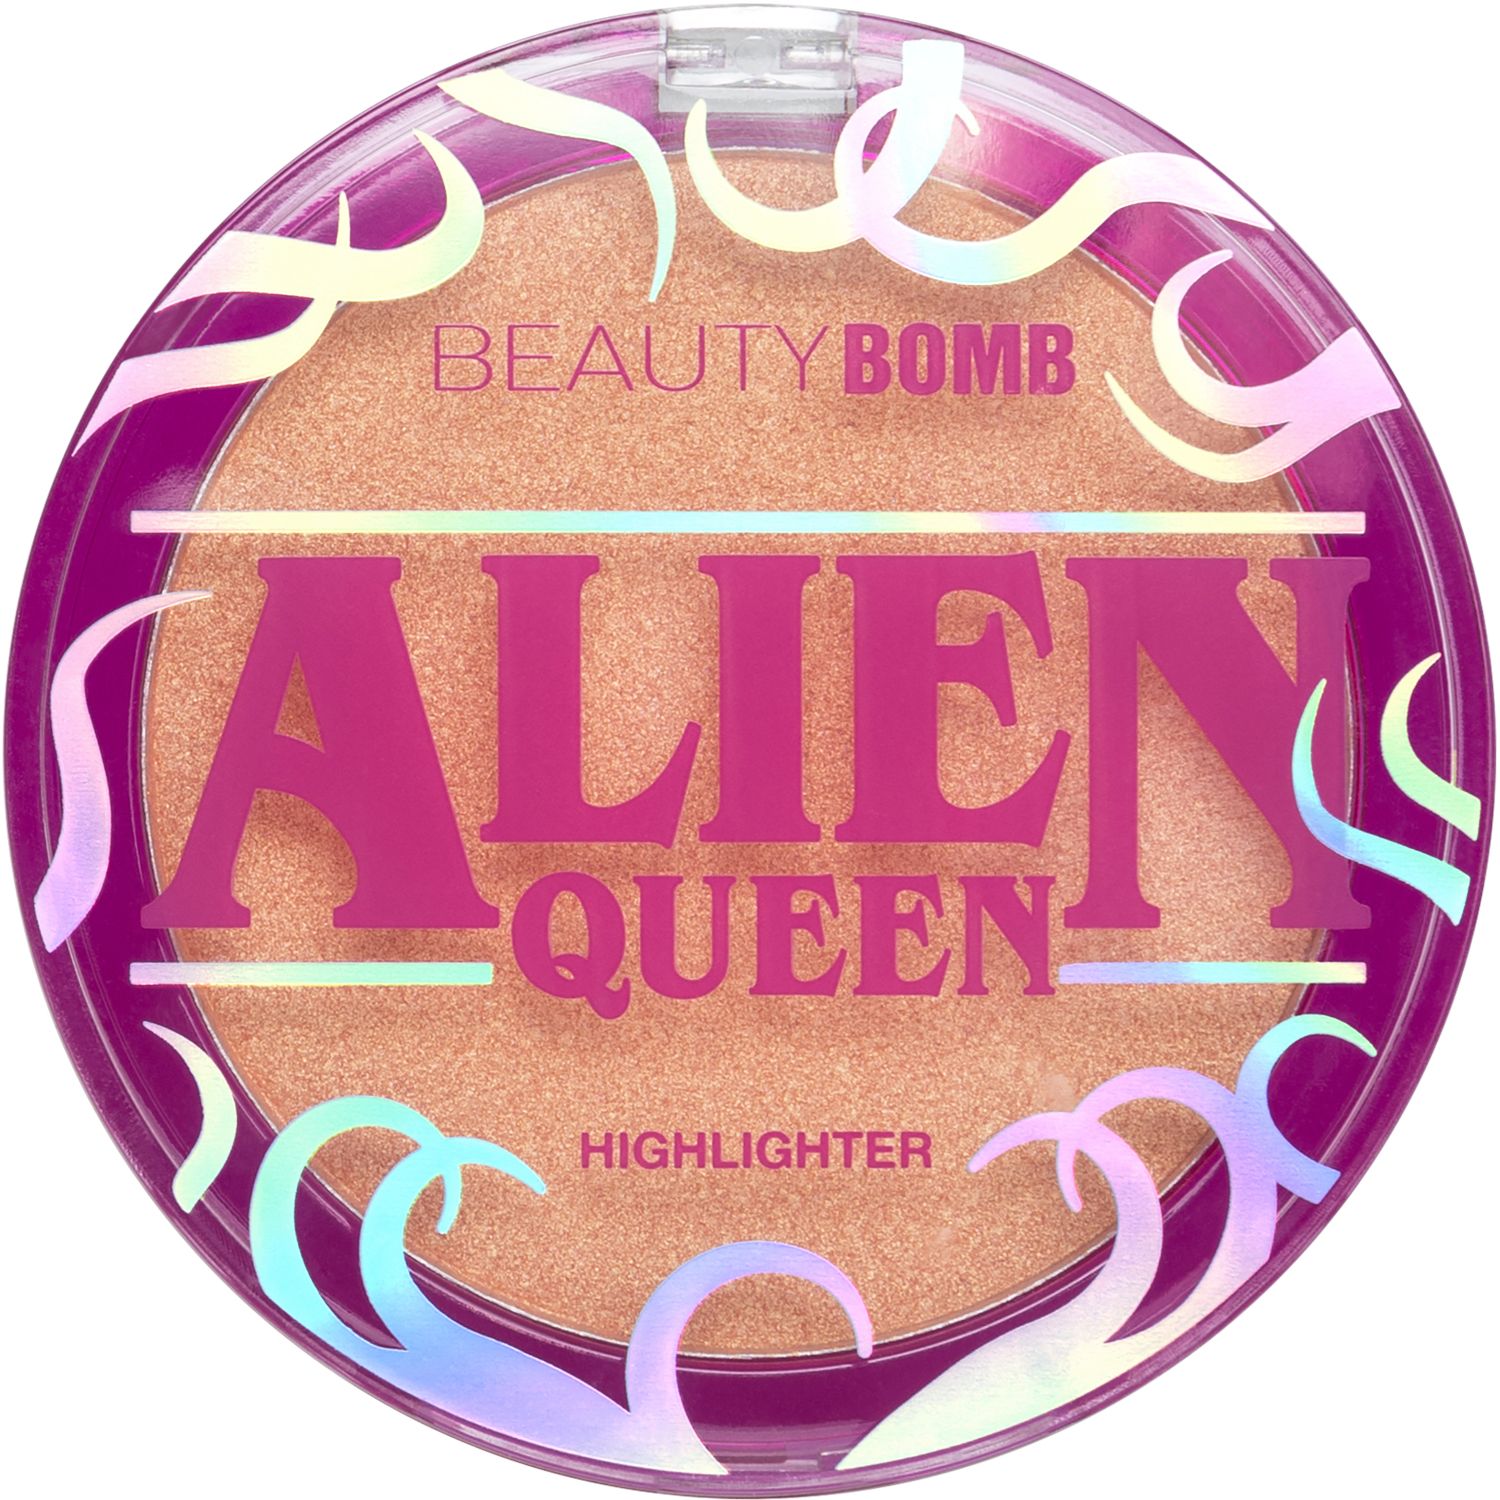 Хайлайтер Beauty Bomb Alien Queen  с золотистым сиянием, персиковый, №01, 6 г бомбочка для ванны beauty desserts шипучая персиковый донат 140 г